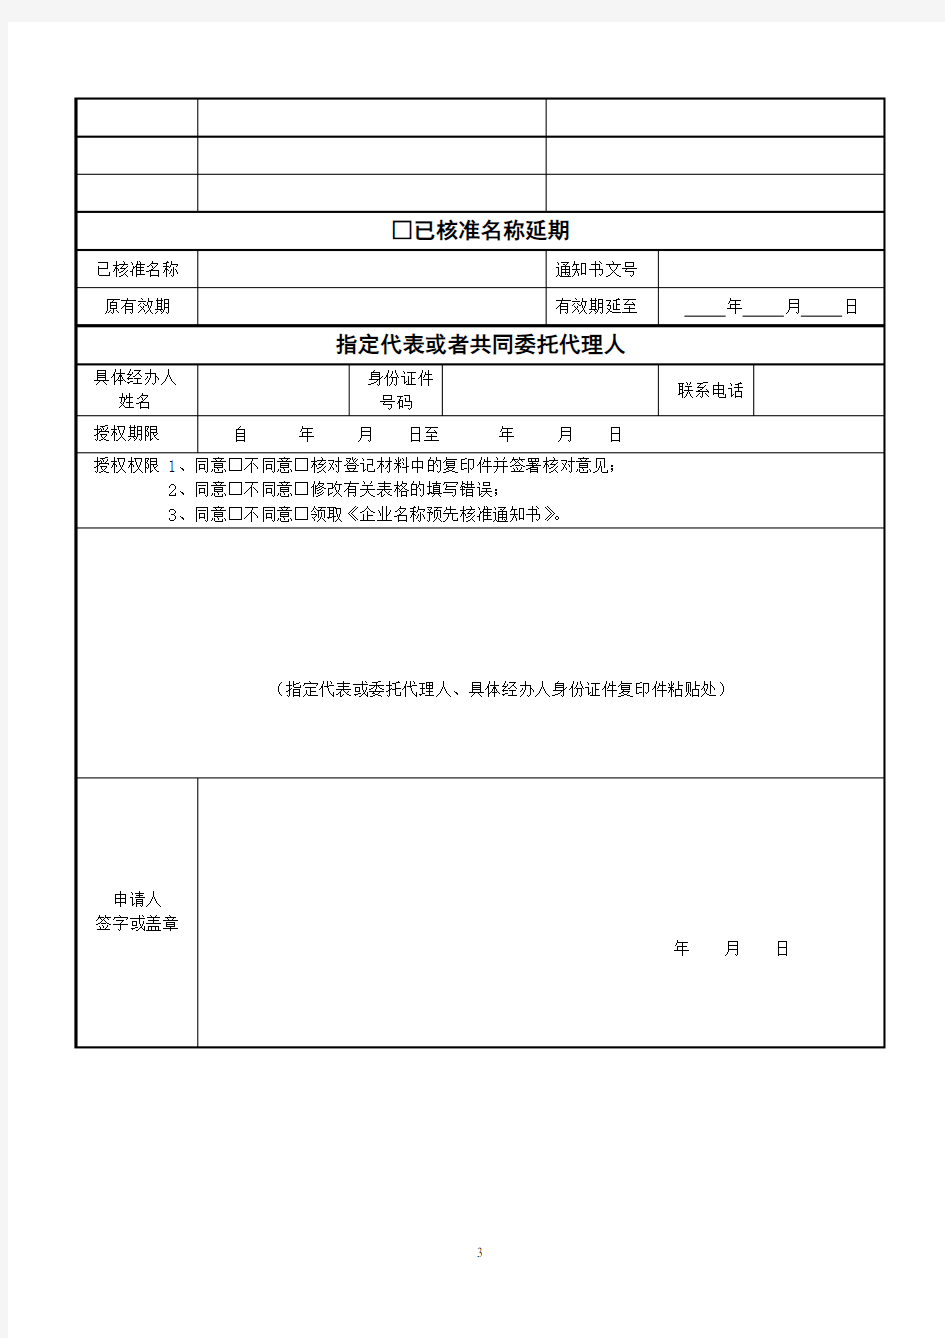 河南-01-01-企业名称预先核准申请书